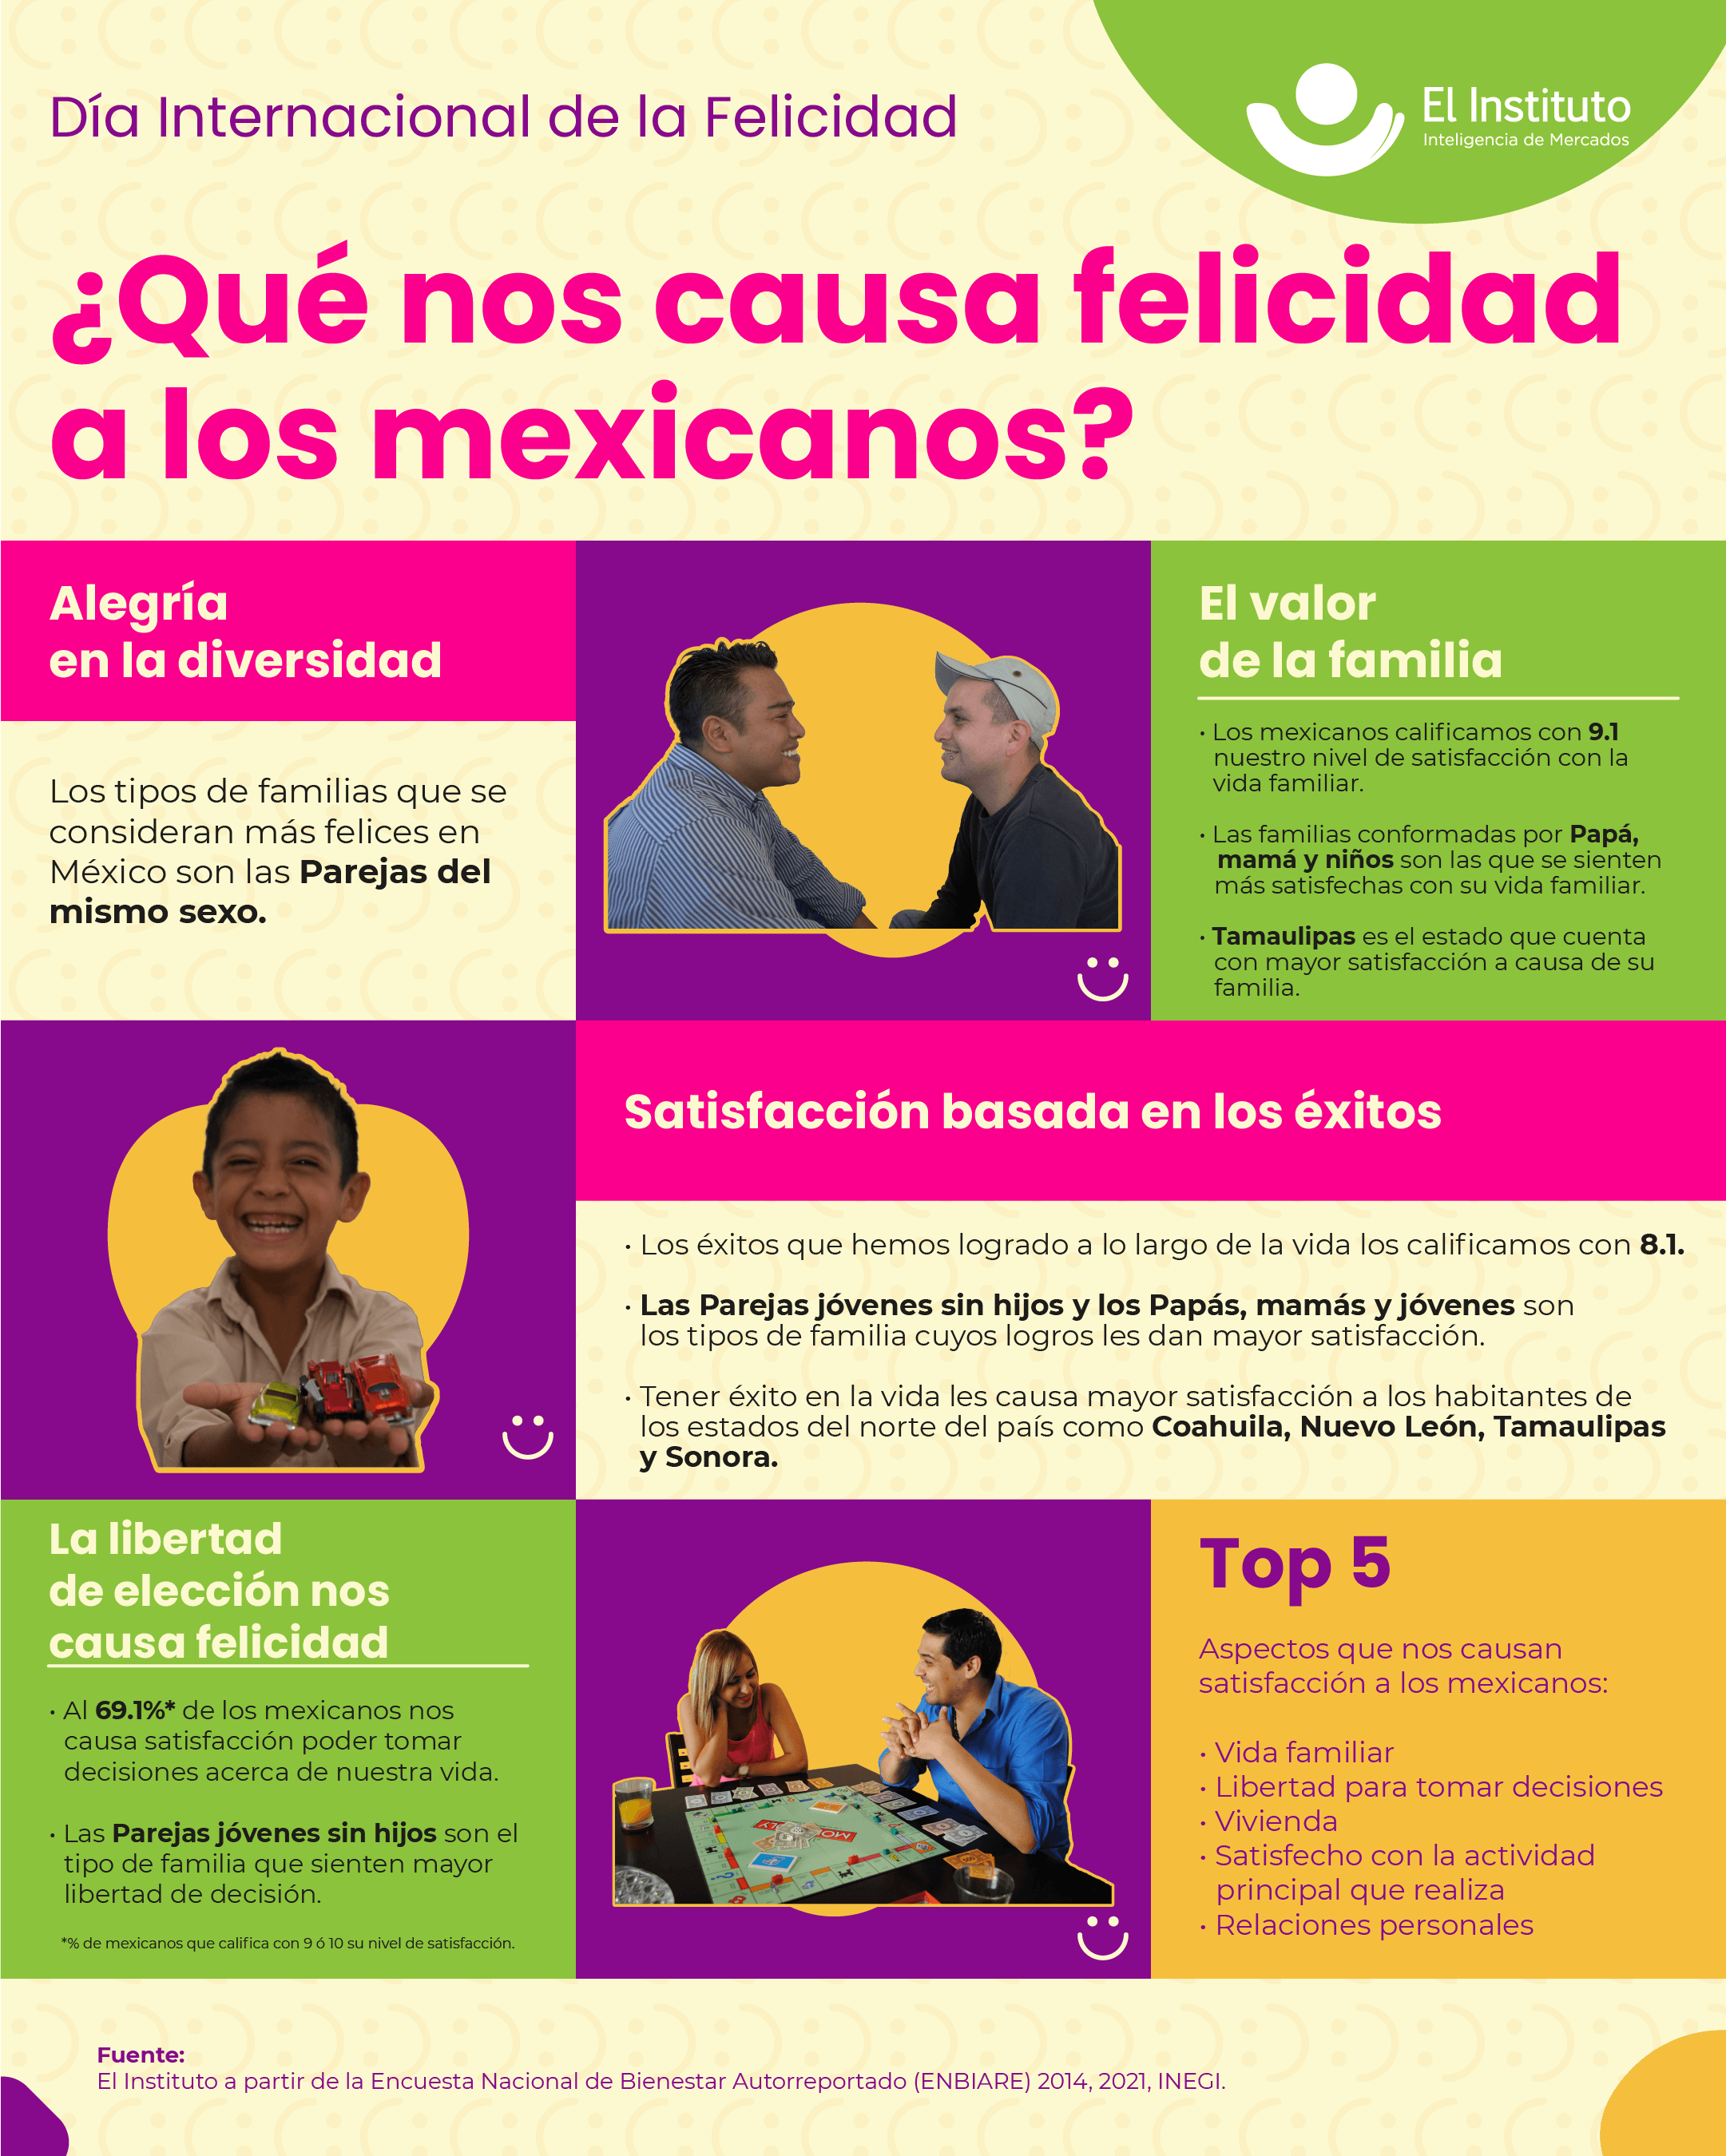 Celebramos el Día Internacional de la felicidad con 5 hallazgos, que revelan el estudio de nuestra solución GEOZOOM, sobre los aspectos que nos causan alegría, felicidad y satisfacción a los mexicanos.